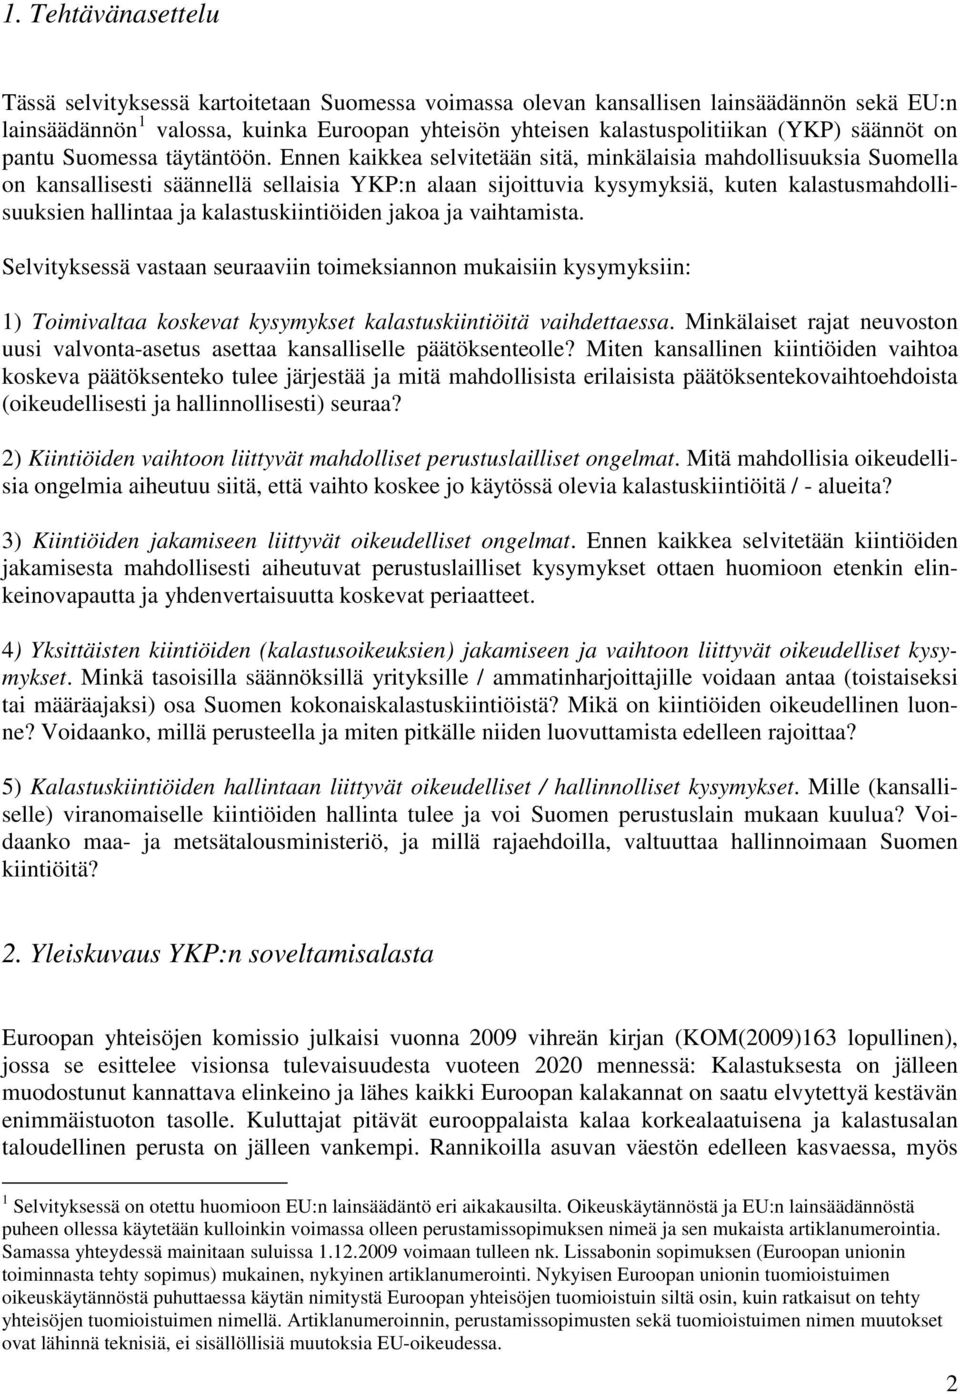 Ennen kaikkea selvitetään sitä, minkälaisia mahdollisuuksia Suomella on kansallisesti säännellä sellaisia YKP:n alaan sijoittuvia kysymyksiä, kuten kalastusmahdollisuuksien hallintaa ja